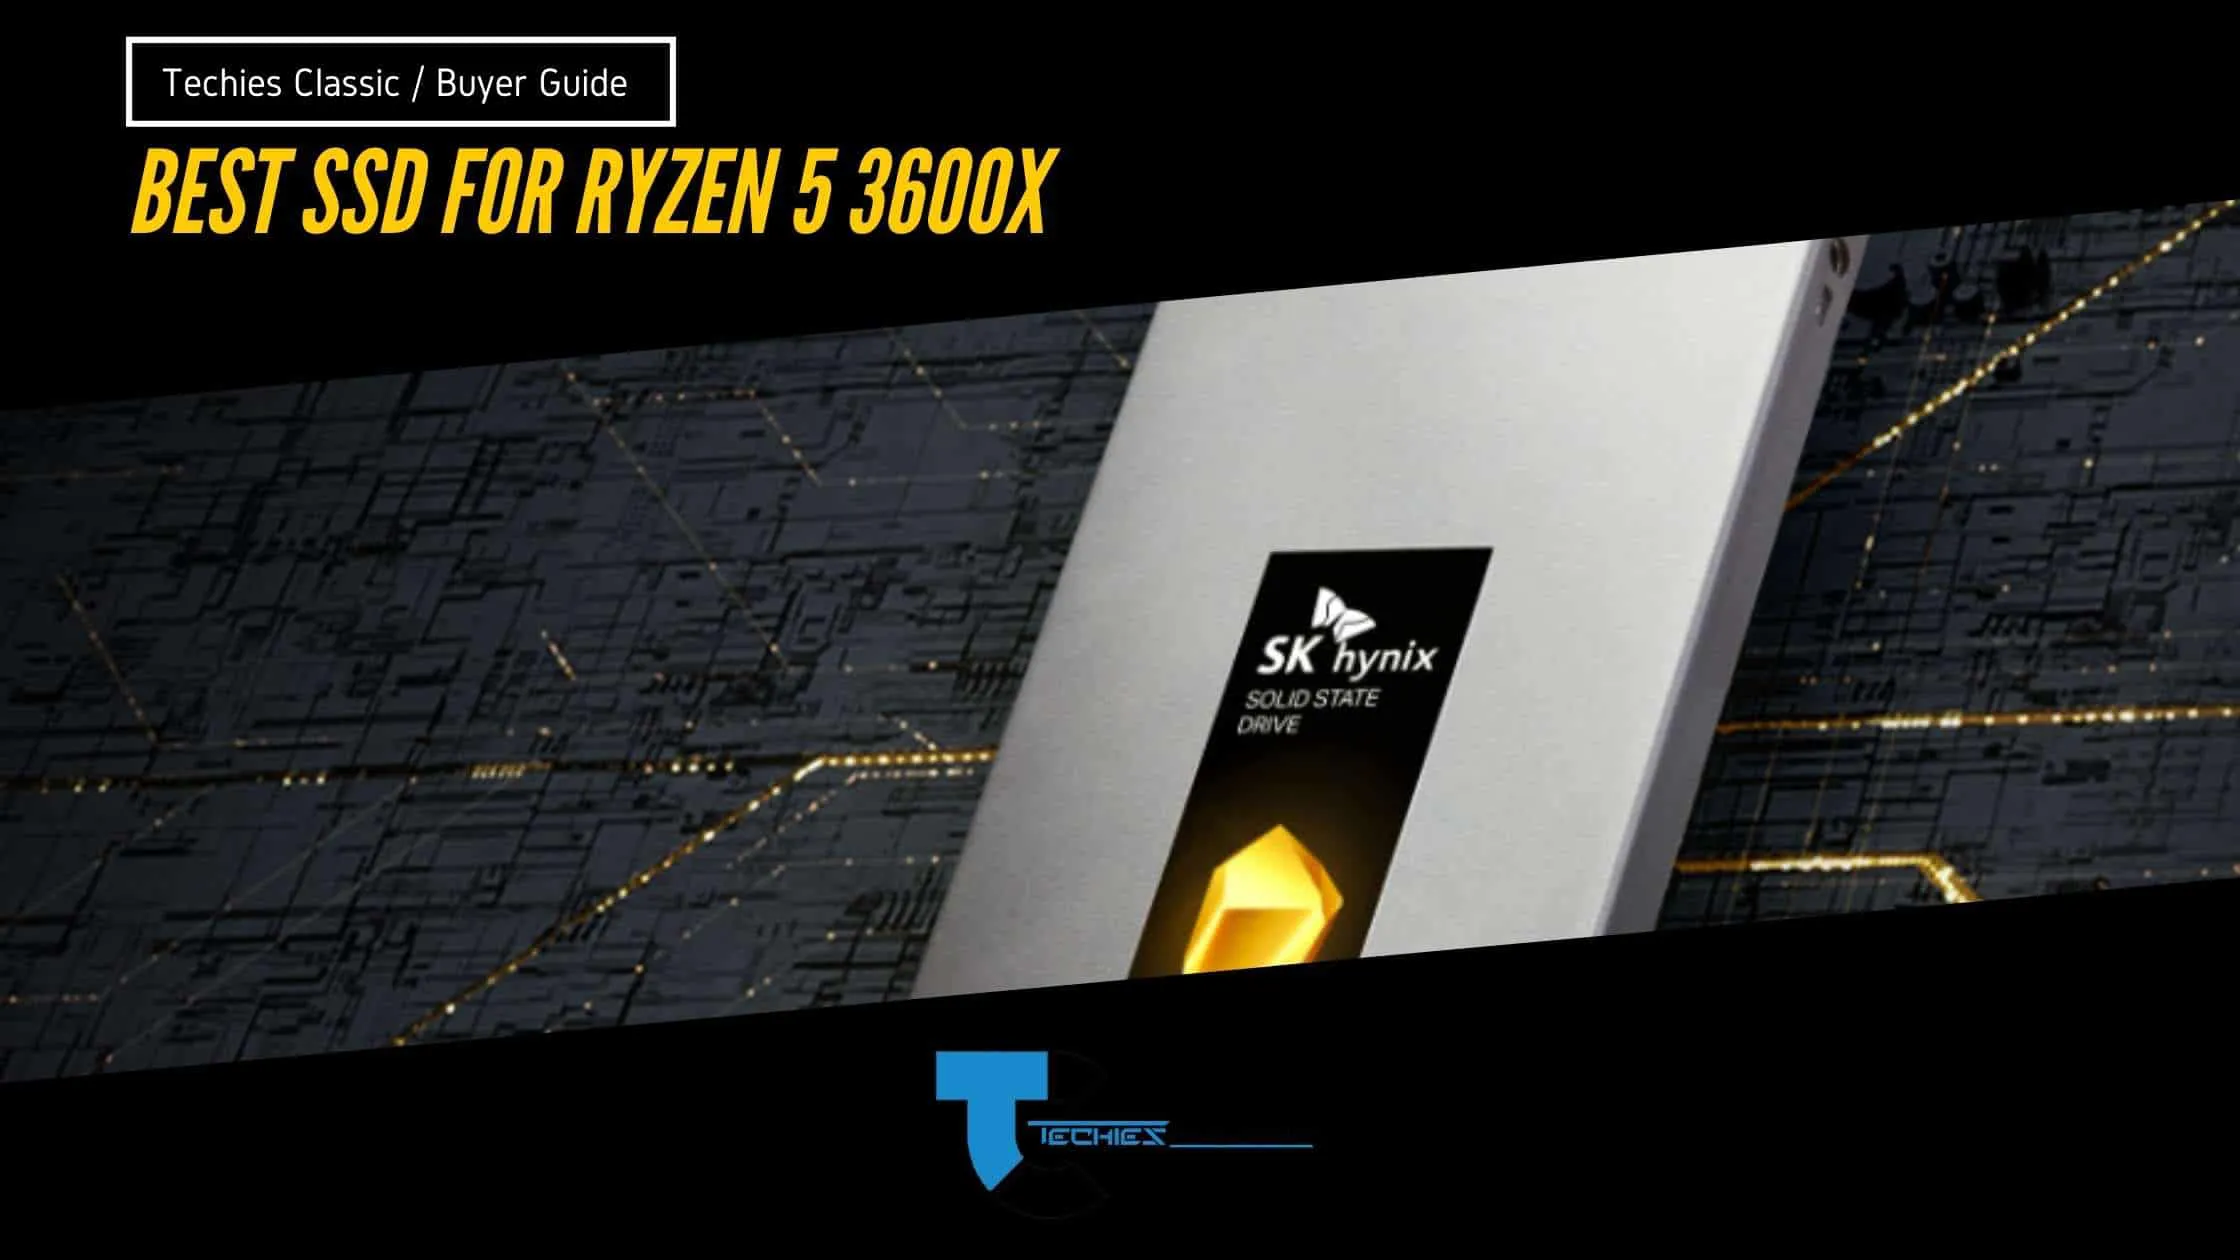 Choose the best SSD for ryzen 5 3600x in 2022